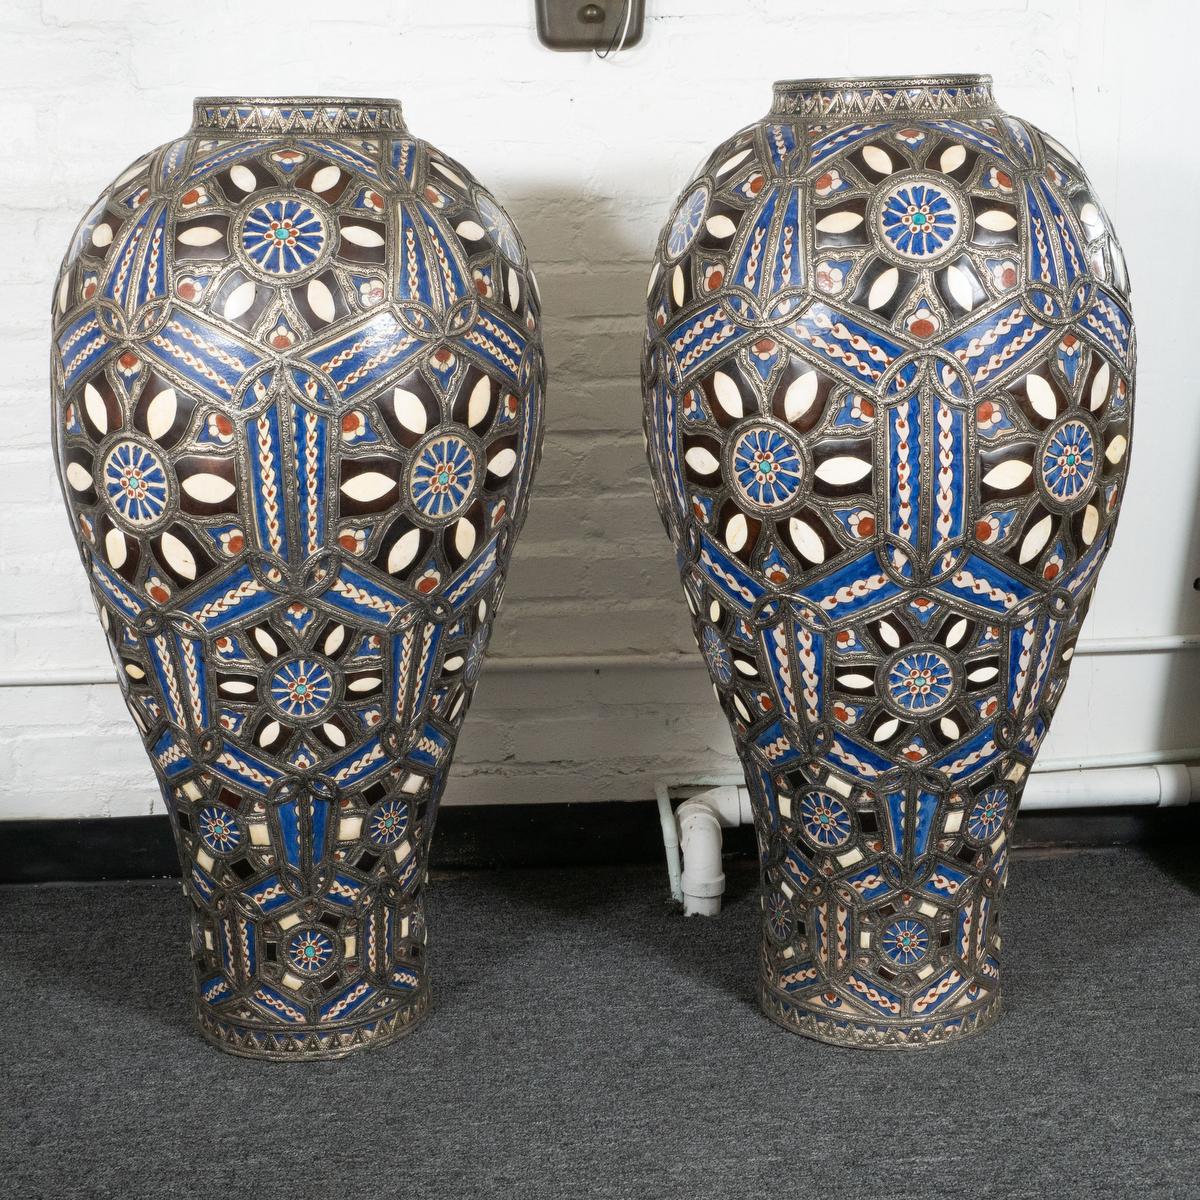 Ein Paar bunte, blau-weiß-rote, großformatige marokkanische Keramikvasen. Die Vasen verfügen über wunderschön eingelegte und bemalte Elemente, die einen atemberaubenden Mosaikeffekt erzeugen, sowie über eine aufwändig gepresste Metallleiste als